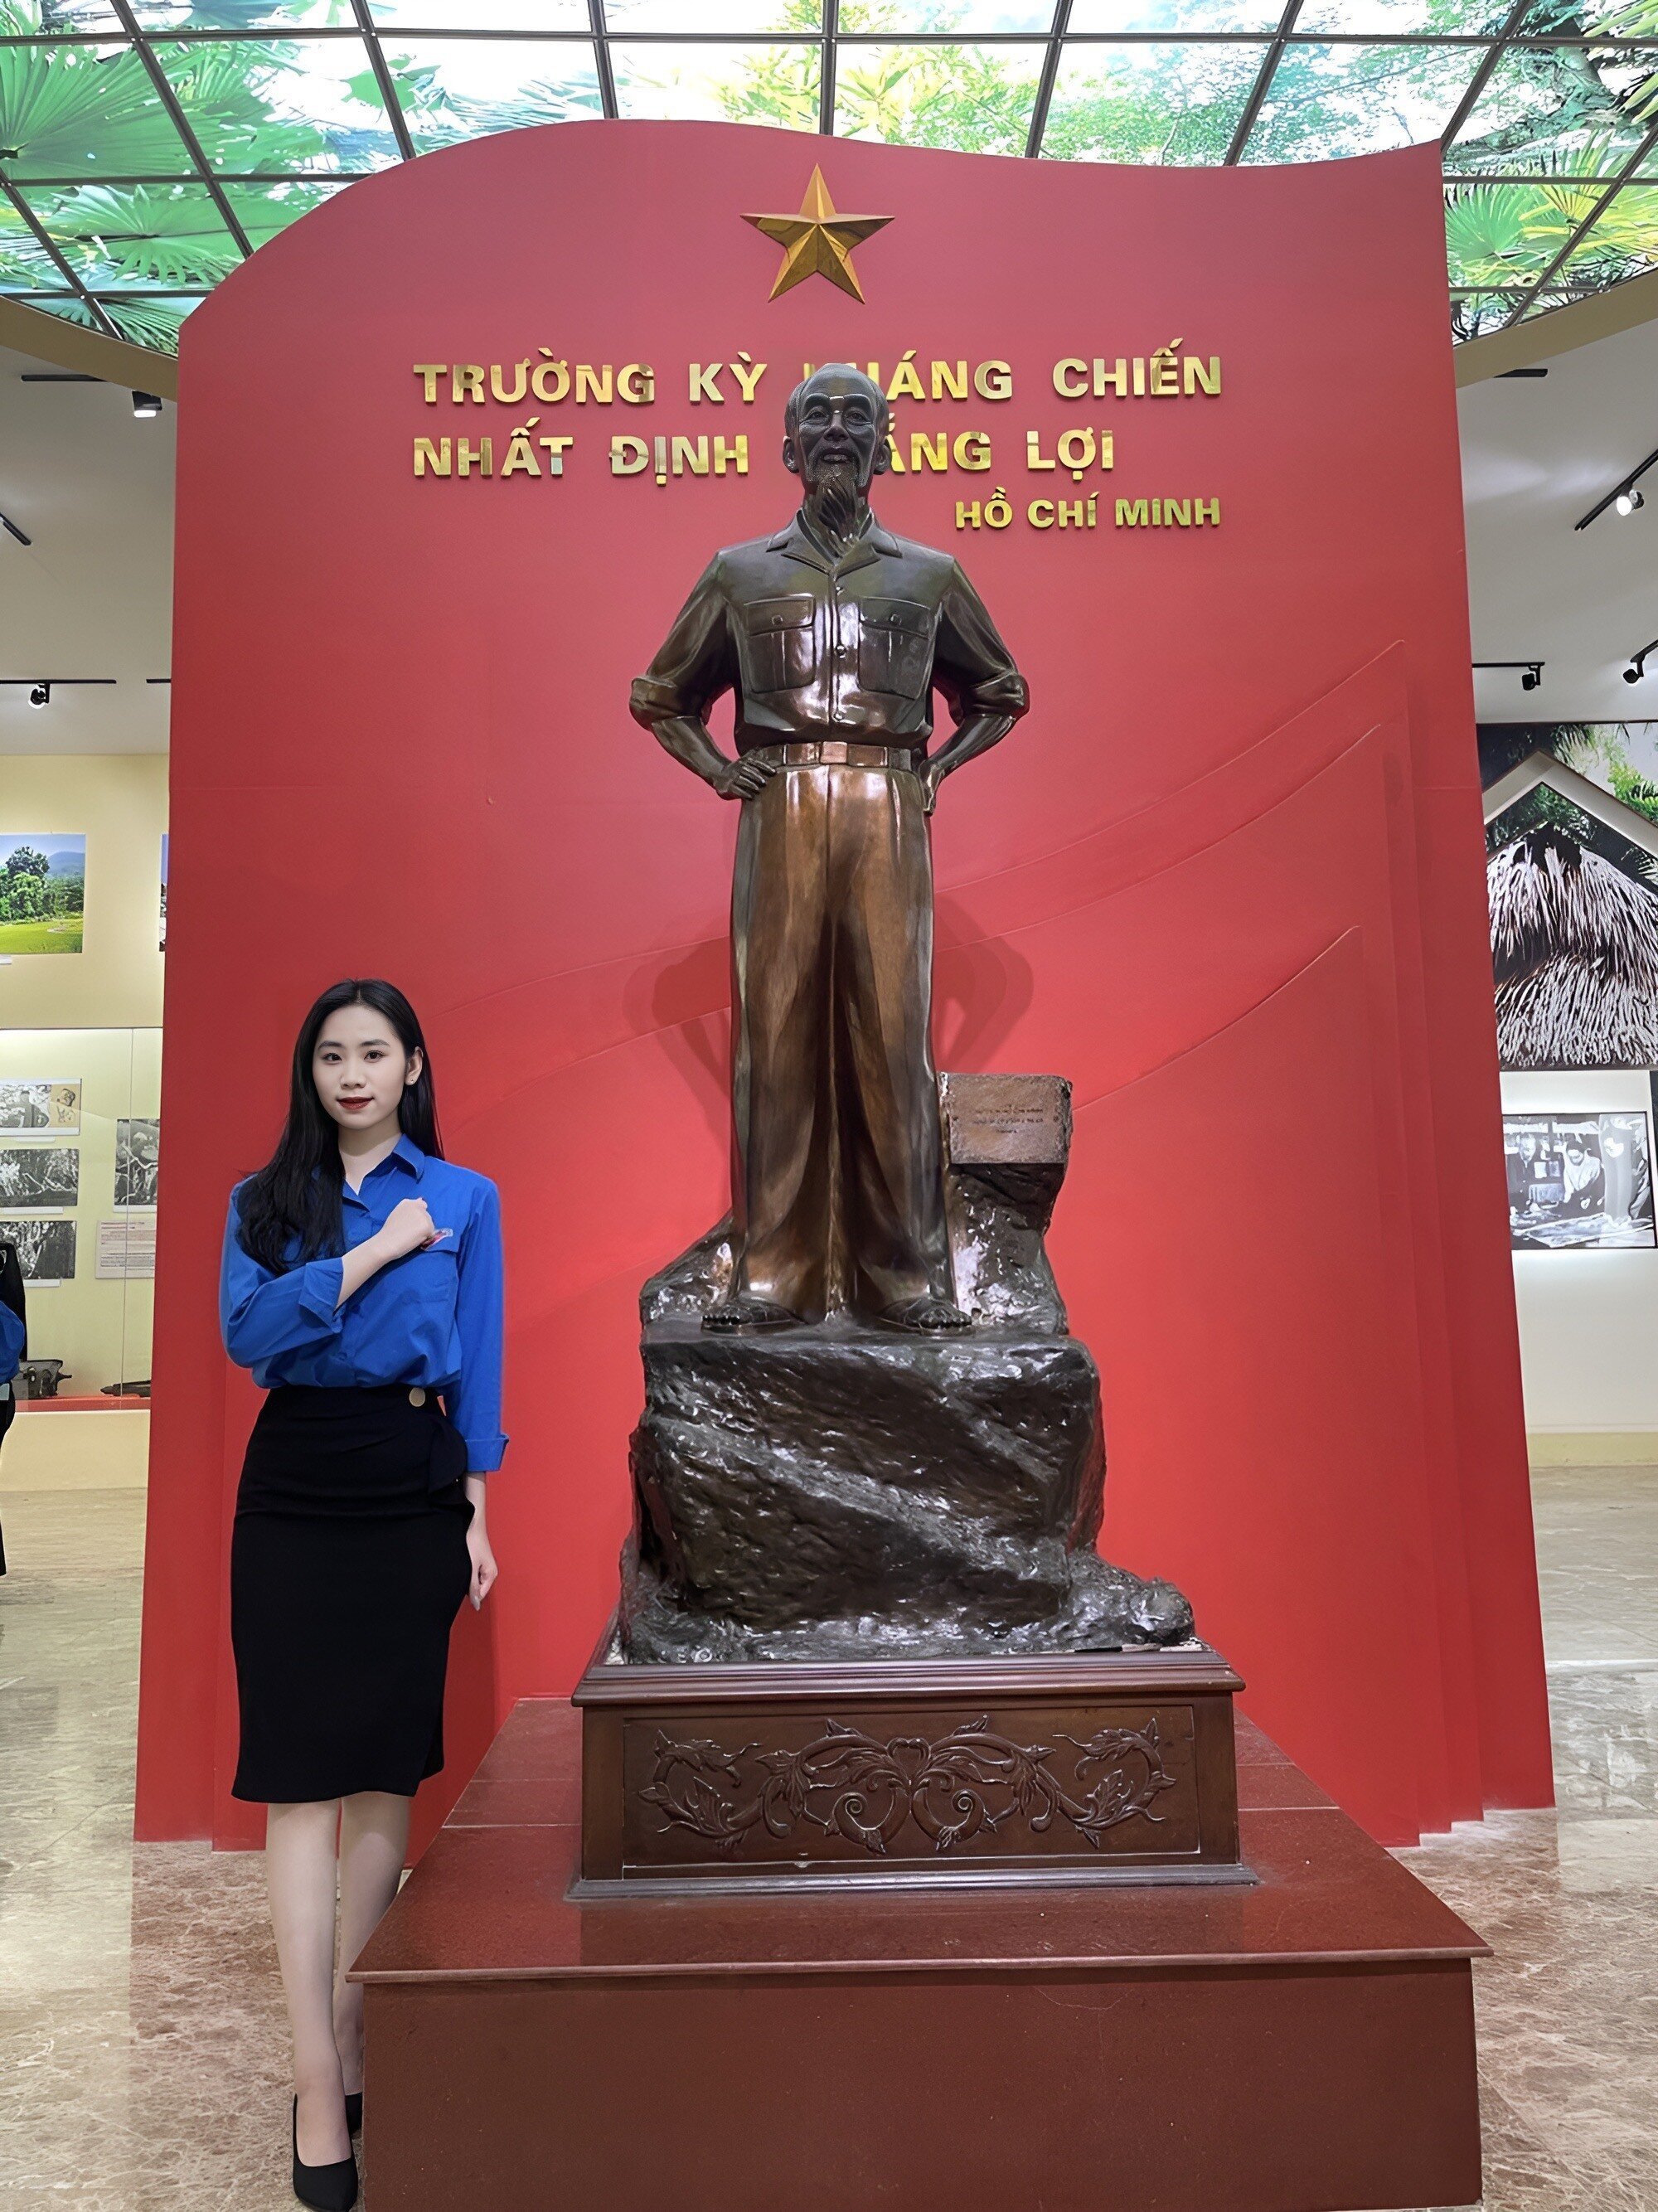 Trong tương lai gần, nữ sinh đặt mục tiêu sớm trở thành Đảng viên chính thức của Đảng cộng sản Việt Nam.